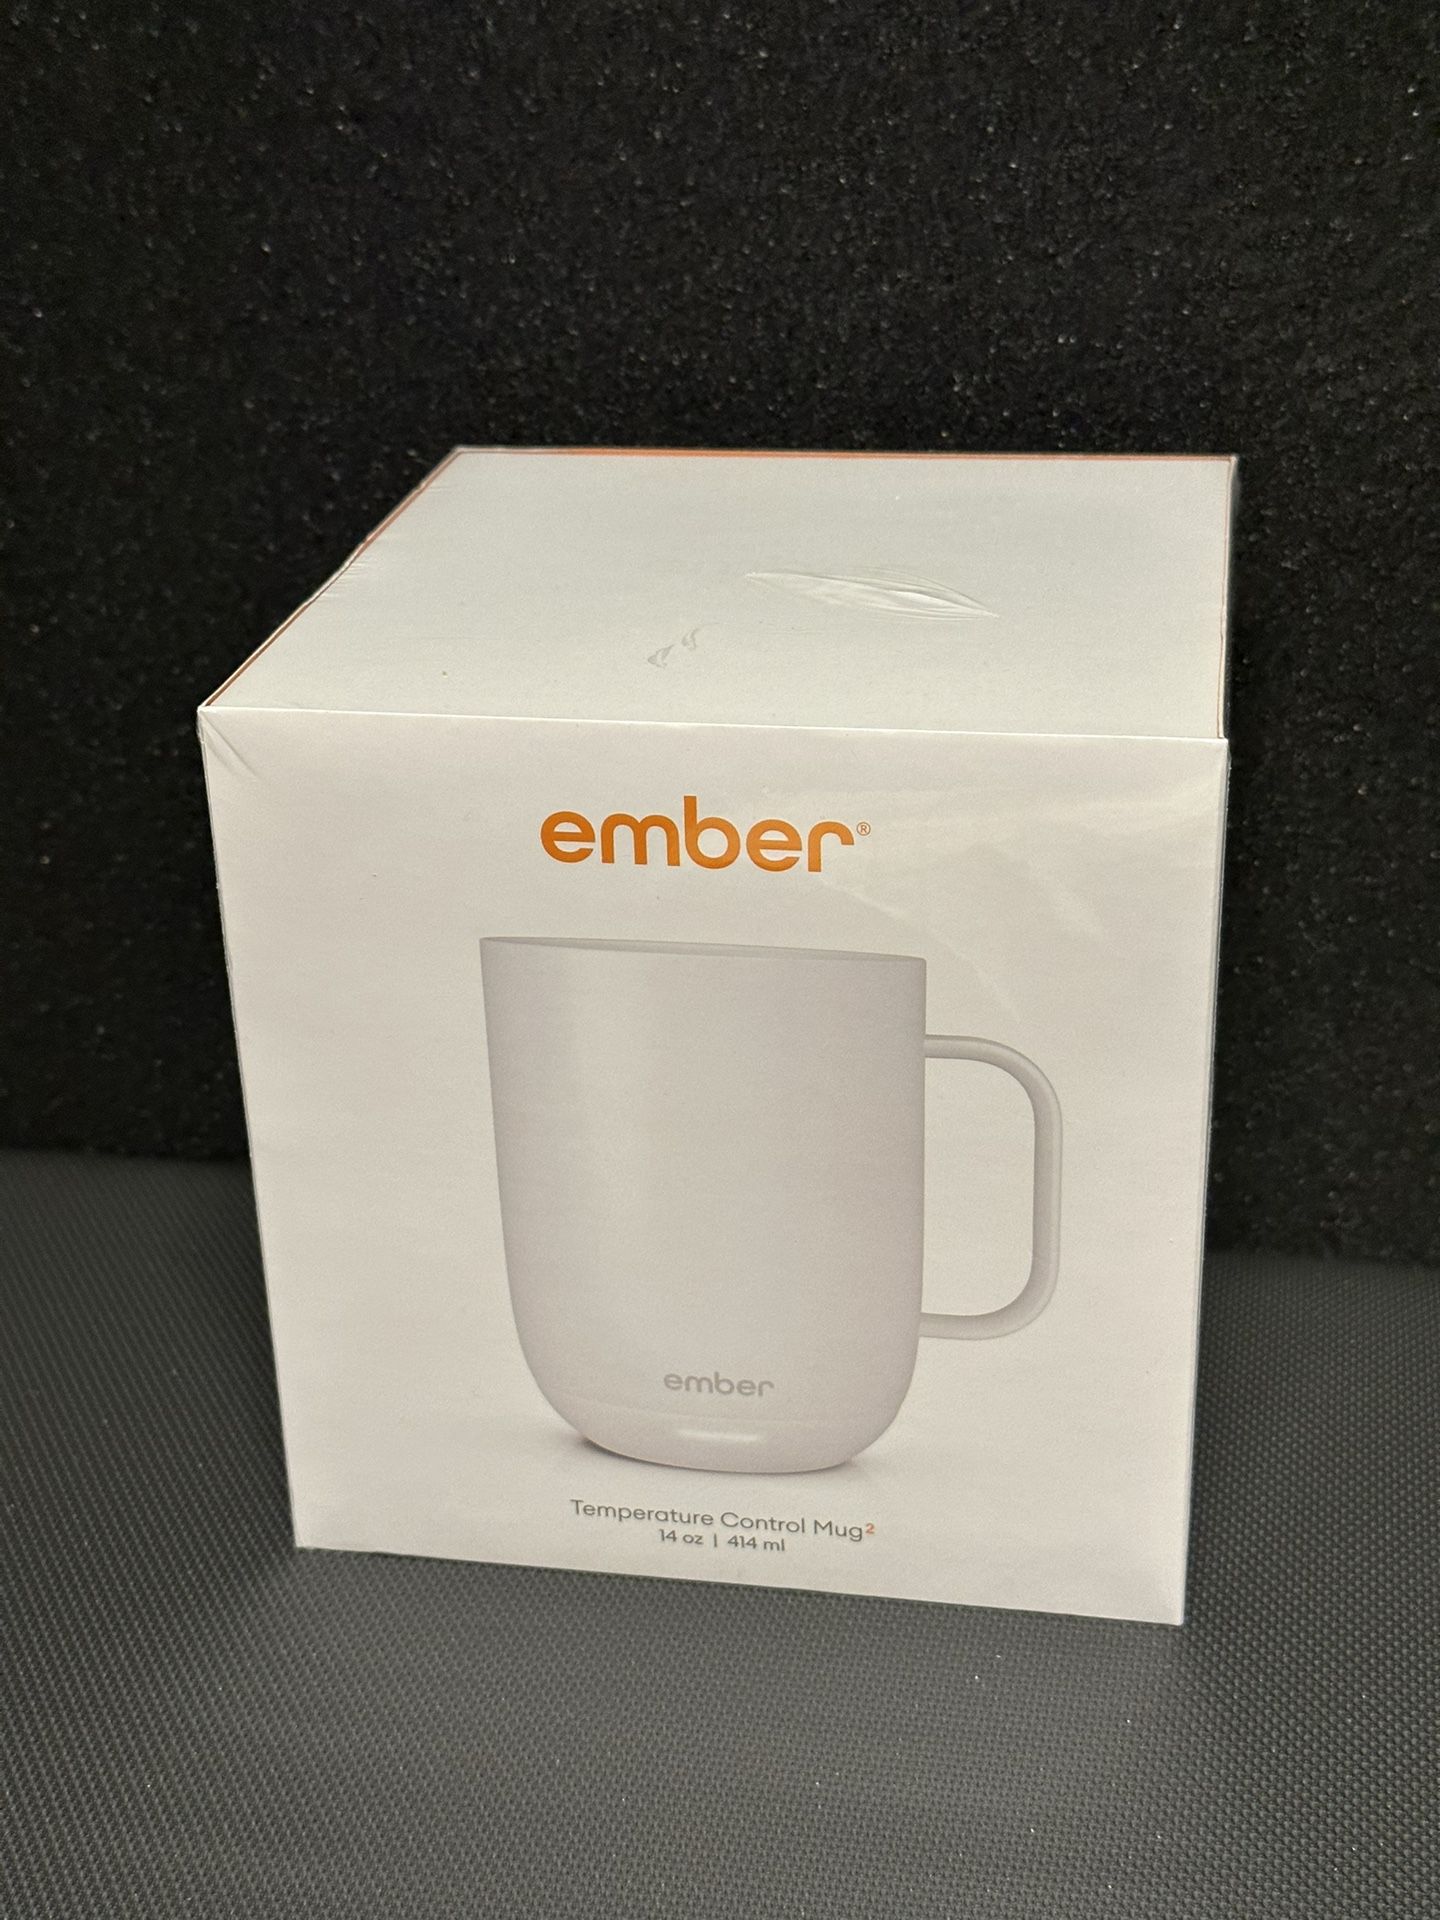 NEW* Ember Temperature Control Smart Mug, 14 oz ( White